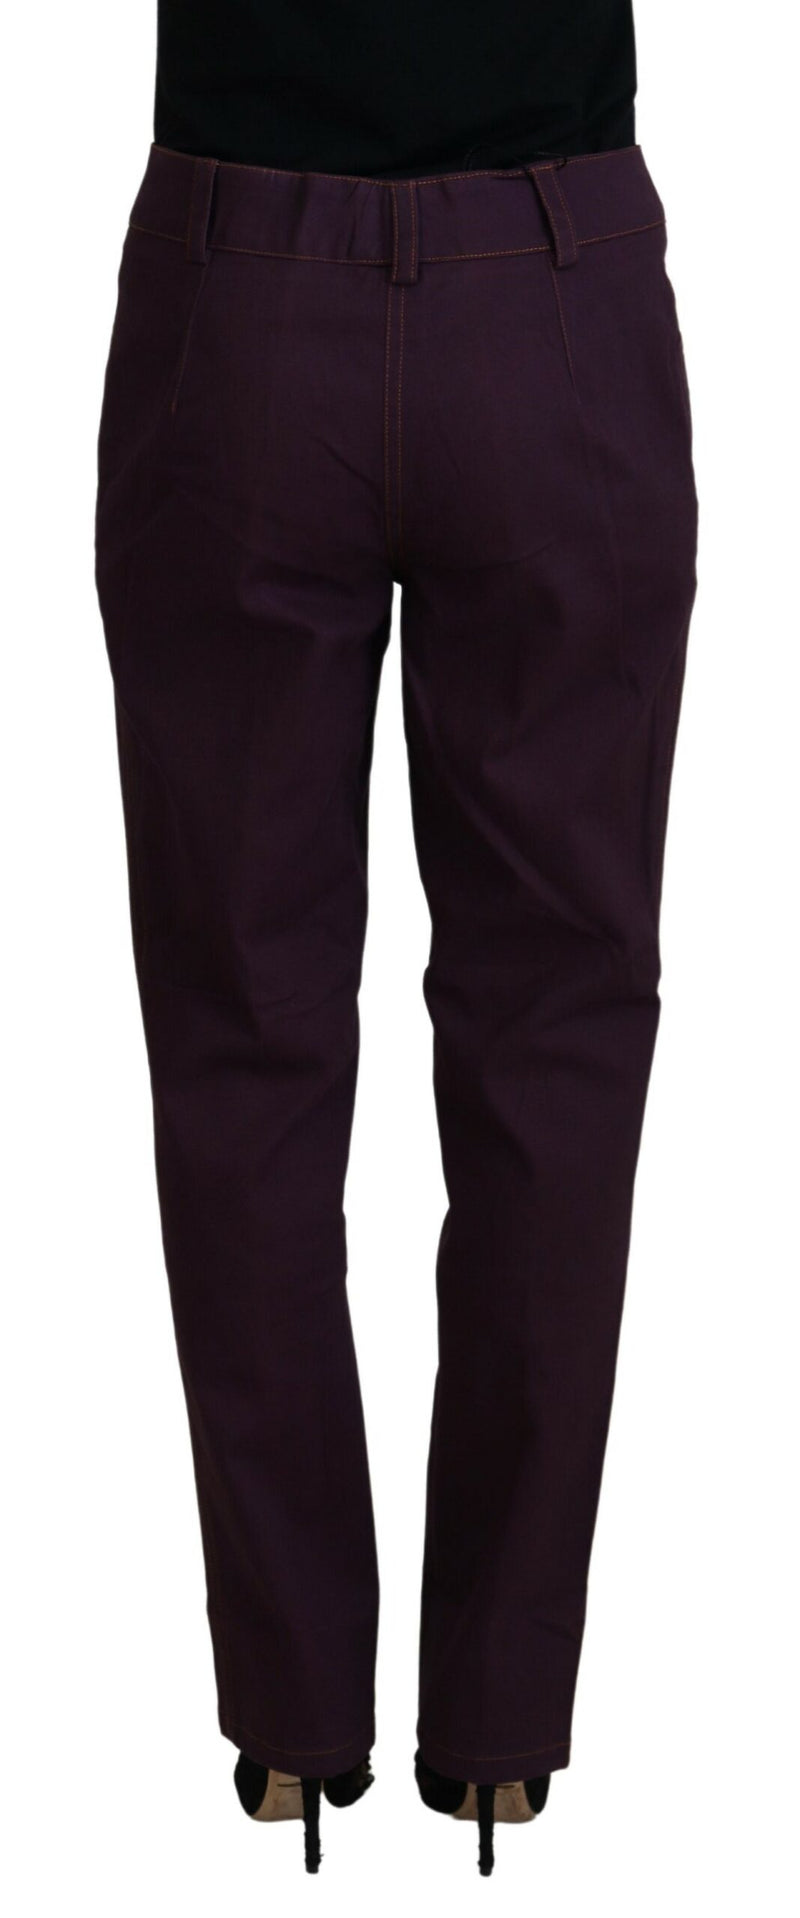 BENCIVENGA Elegant Tapered Purple Cotton Women's Pants